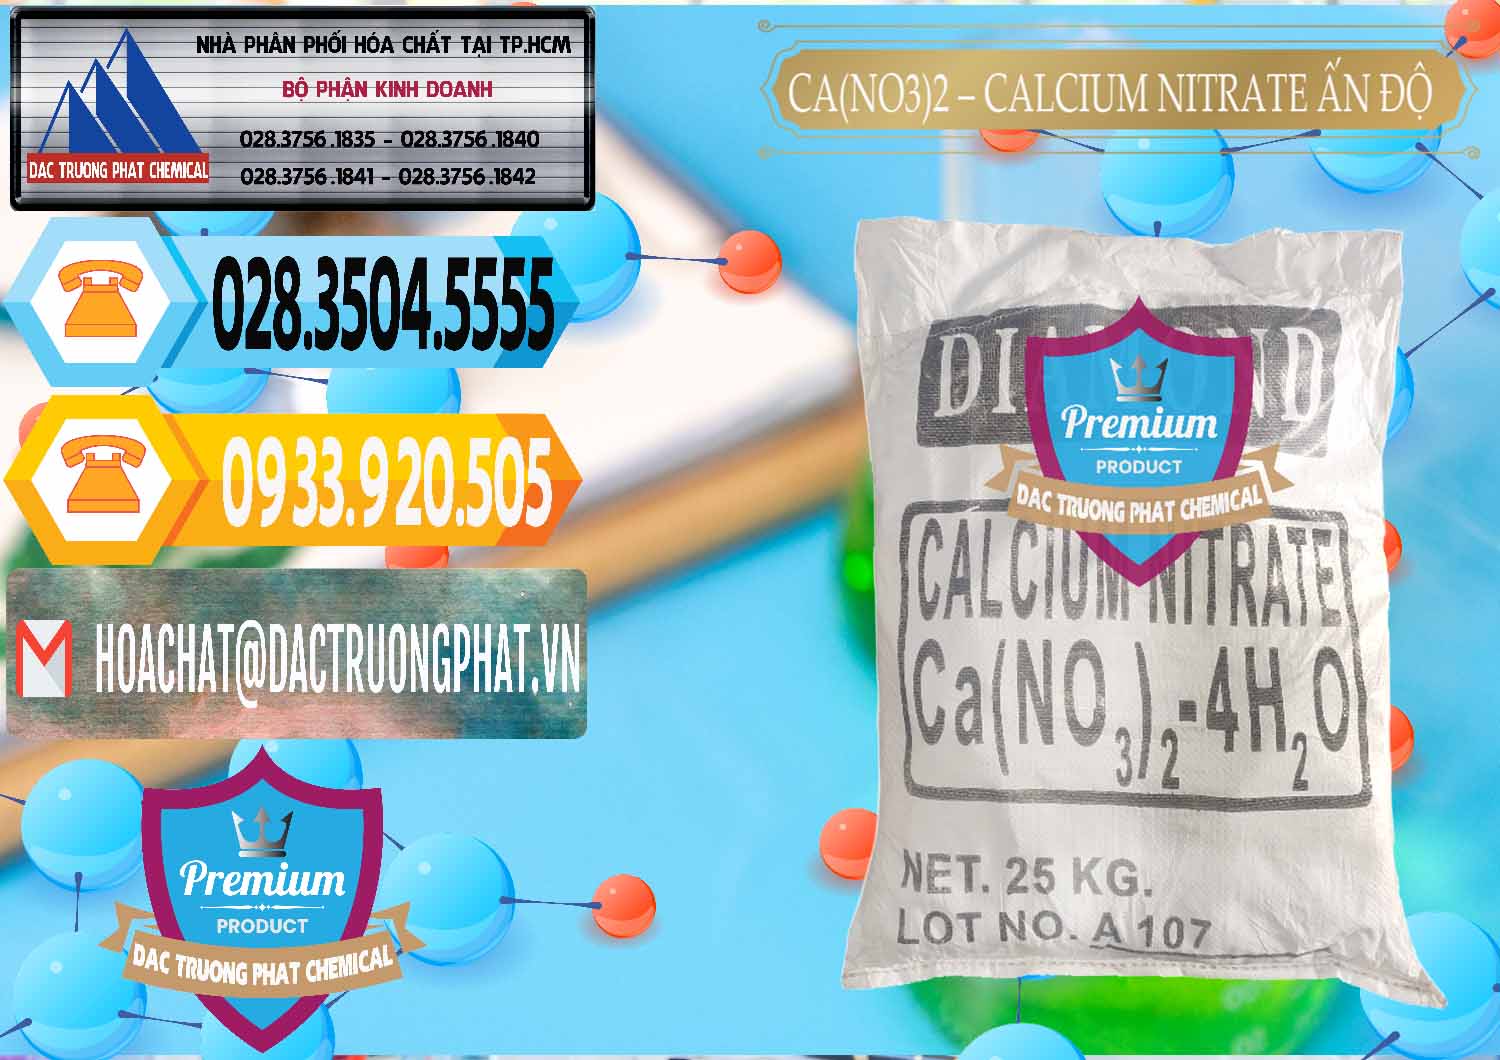 Cty chuyên bán và phân phối CA(NO3)2 – Calcium Nitrate Ấn Độ India - 0038 - Cung cấp ( kinh doanh ) hóa chất tại TP.HCM - hoachattayrua.net